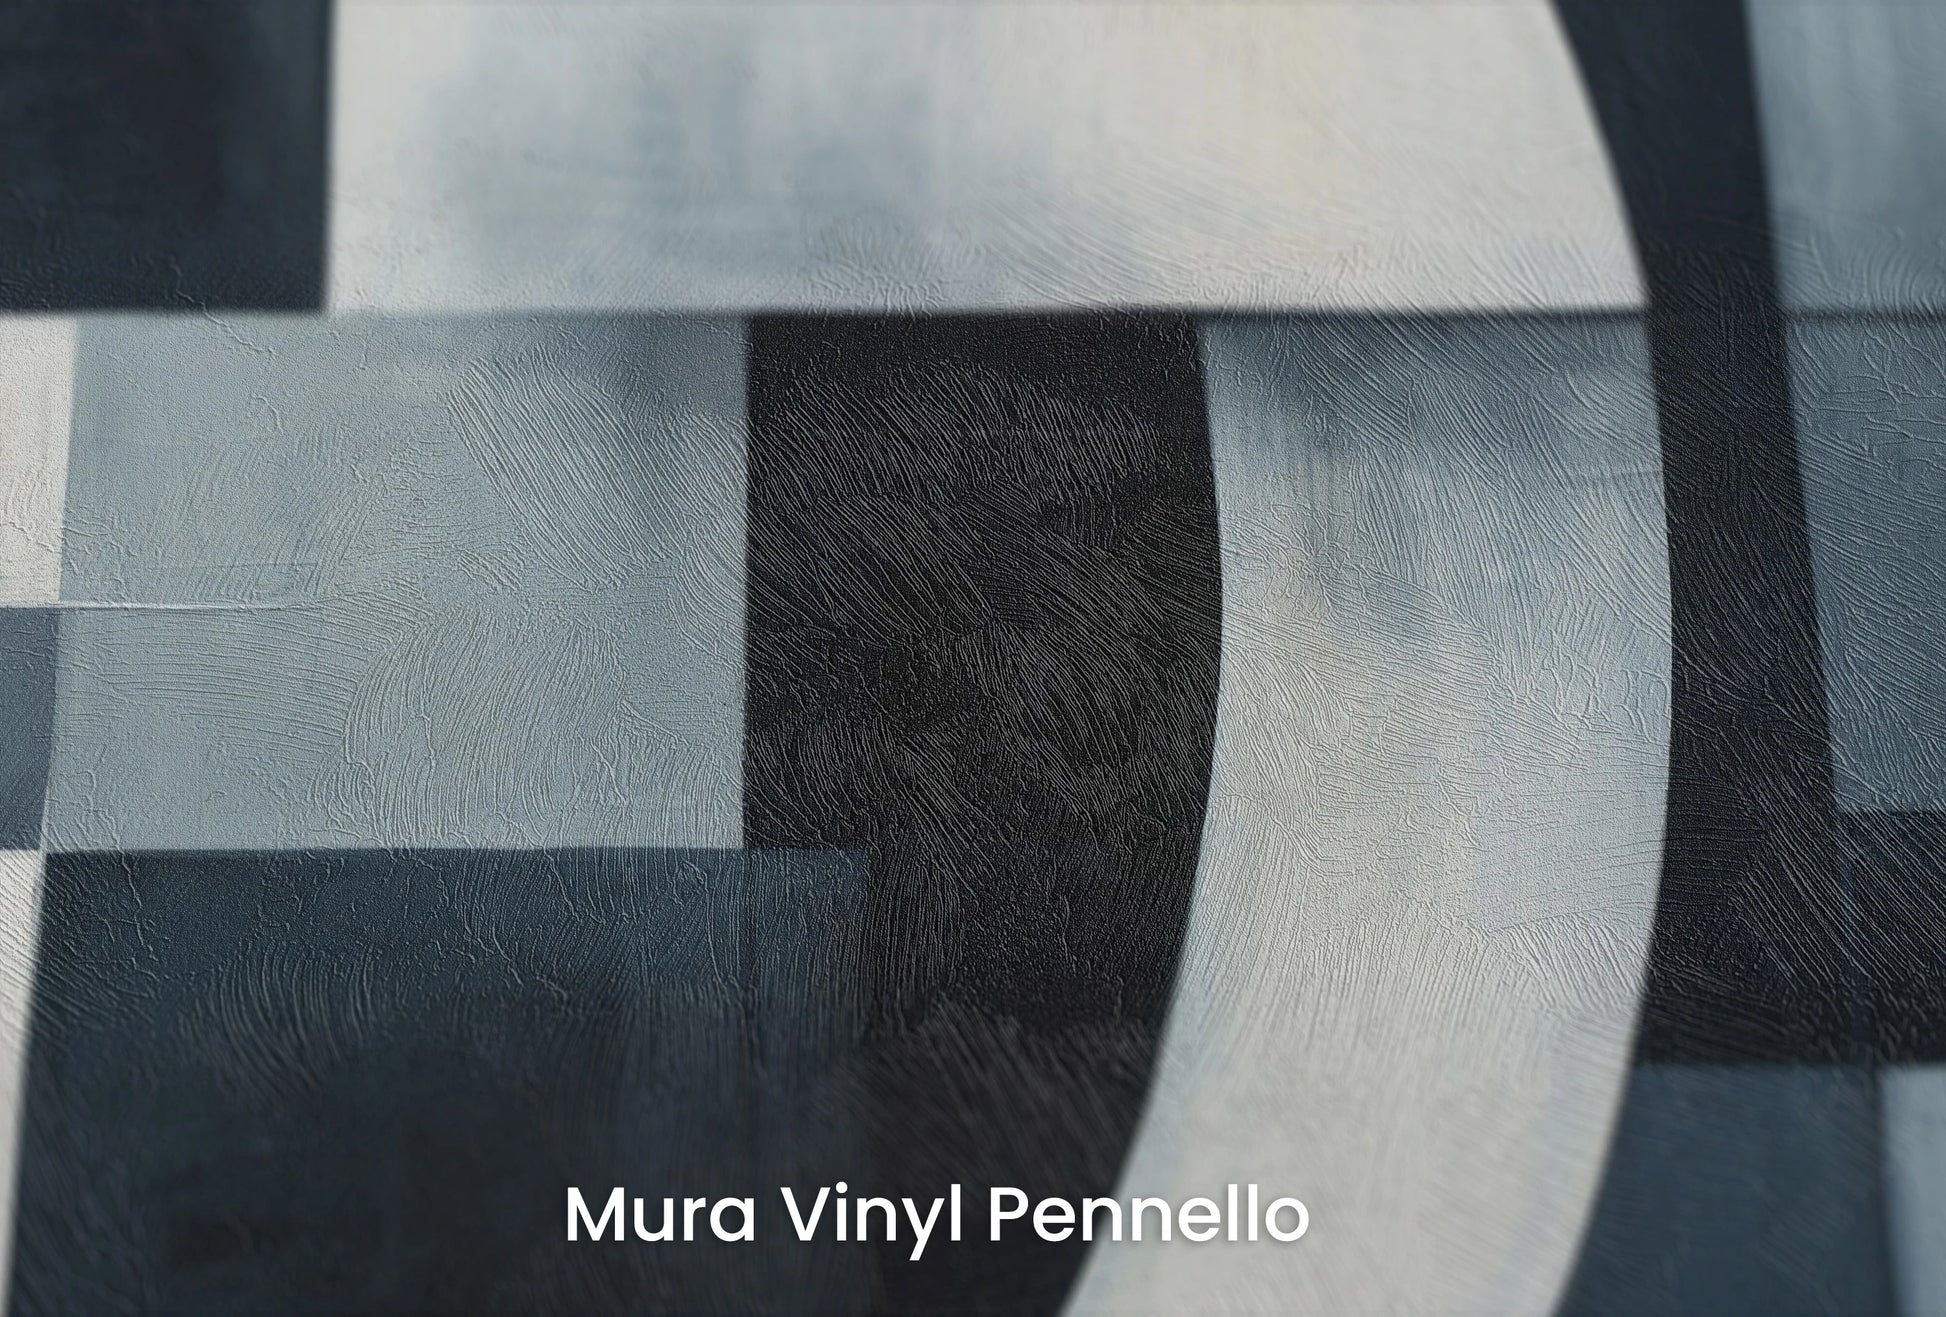 Zbliżenie na artystyczną fototapetę o nazwie Night Geometry na podłożu Mura Vinyl Pennello - faktura pociągnięć pędzla malarskiego.